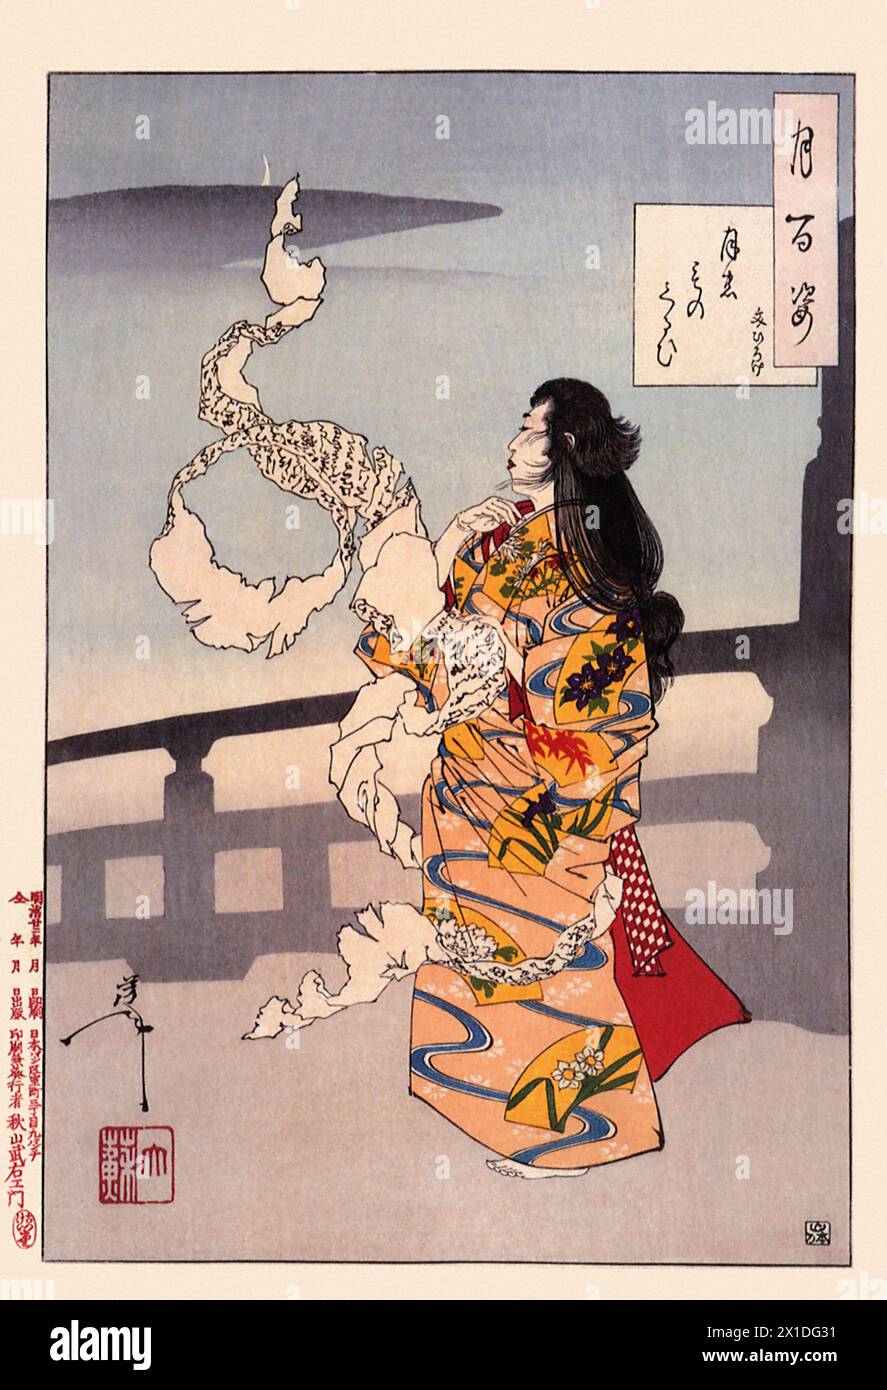 Tsukioka Yoshitoshi (1839 bis 9. Juni 1892) einer der letzten großen Meister des klassischen japanischen Farbholzschnitt, hier das Werk  Lunacy - Unrolling Letters Stock Photo